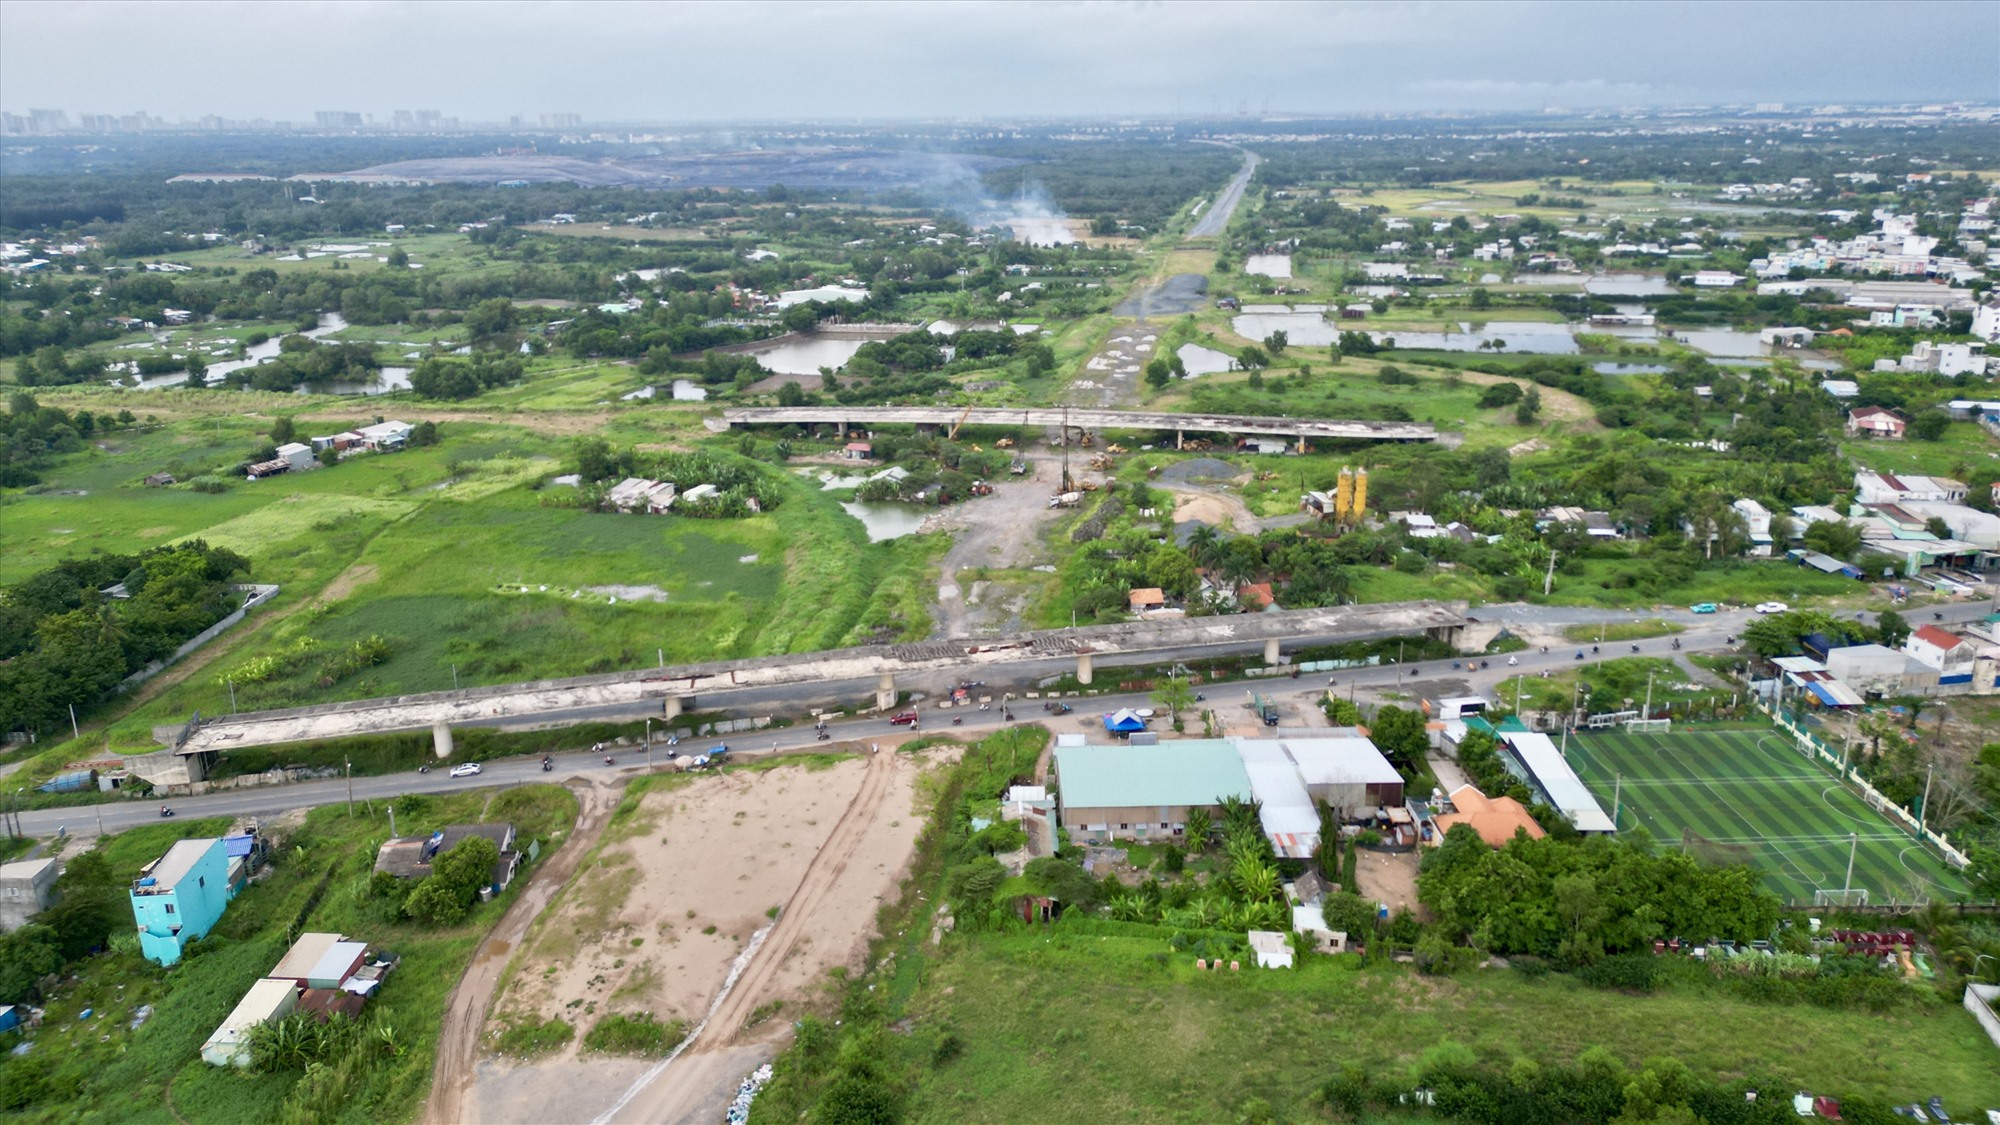 Công trường cao tốc đoạn giao nhau với quốc lộ 50, huyện Bình Chánh vẫn dang dở. Hai cầu dẫn từ tuyến quốc lộ lên cao tốc nằm trơ trọi, nhiều đoạn bêtông xám xịt vì phơi nắng mưa lâu ngày.